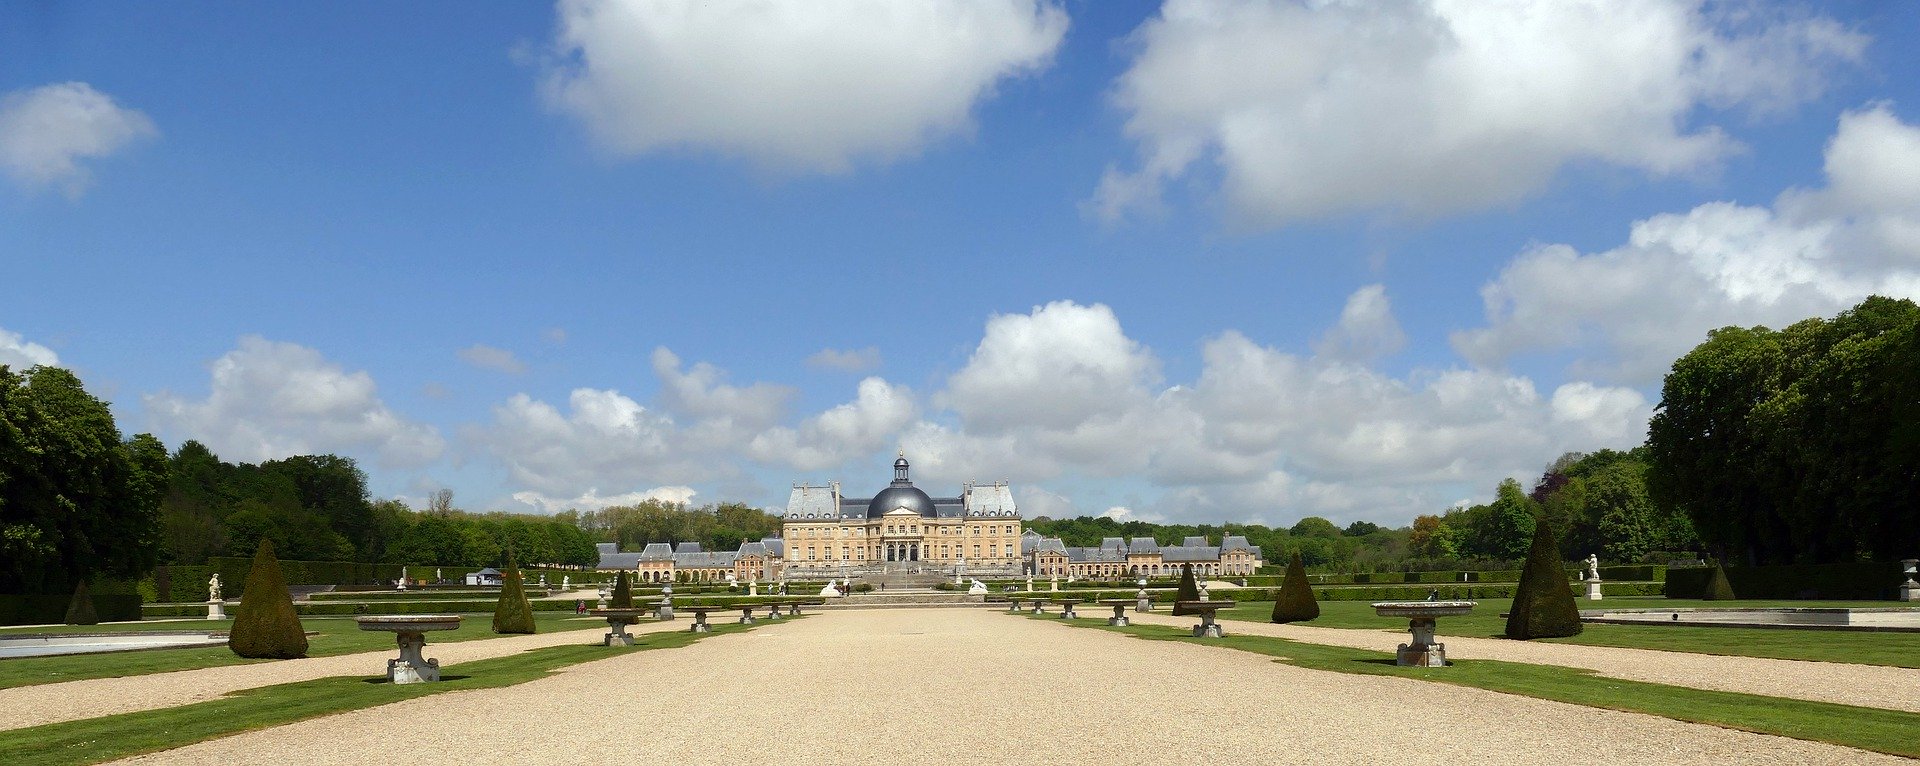 Chateau Vaux le Vicomte garden